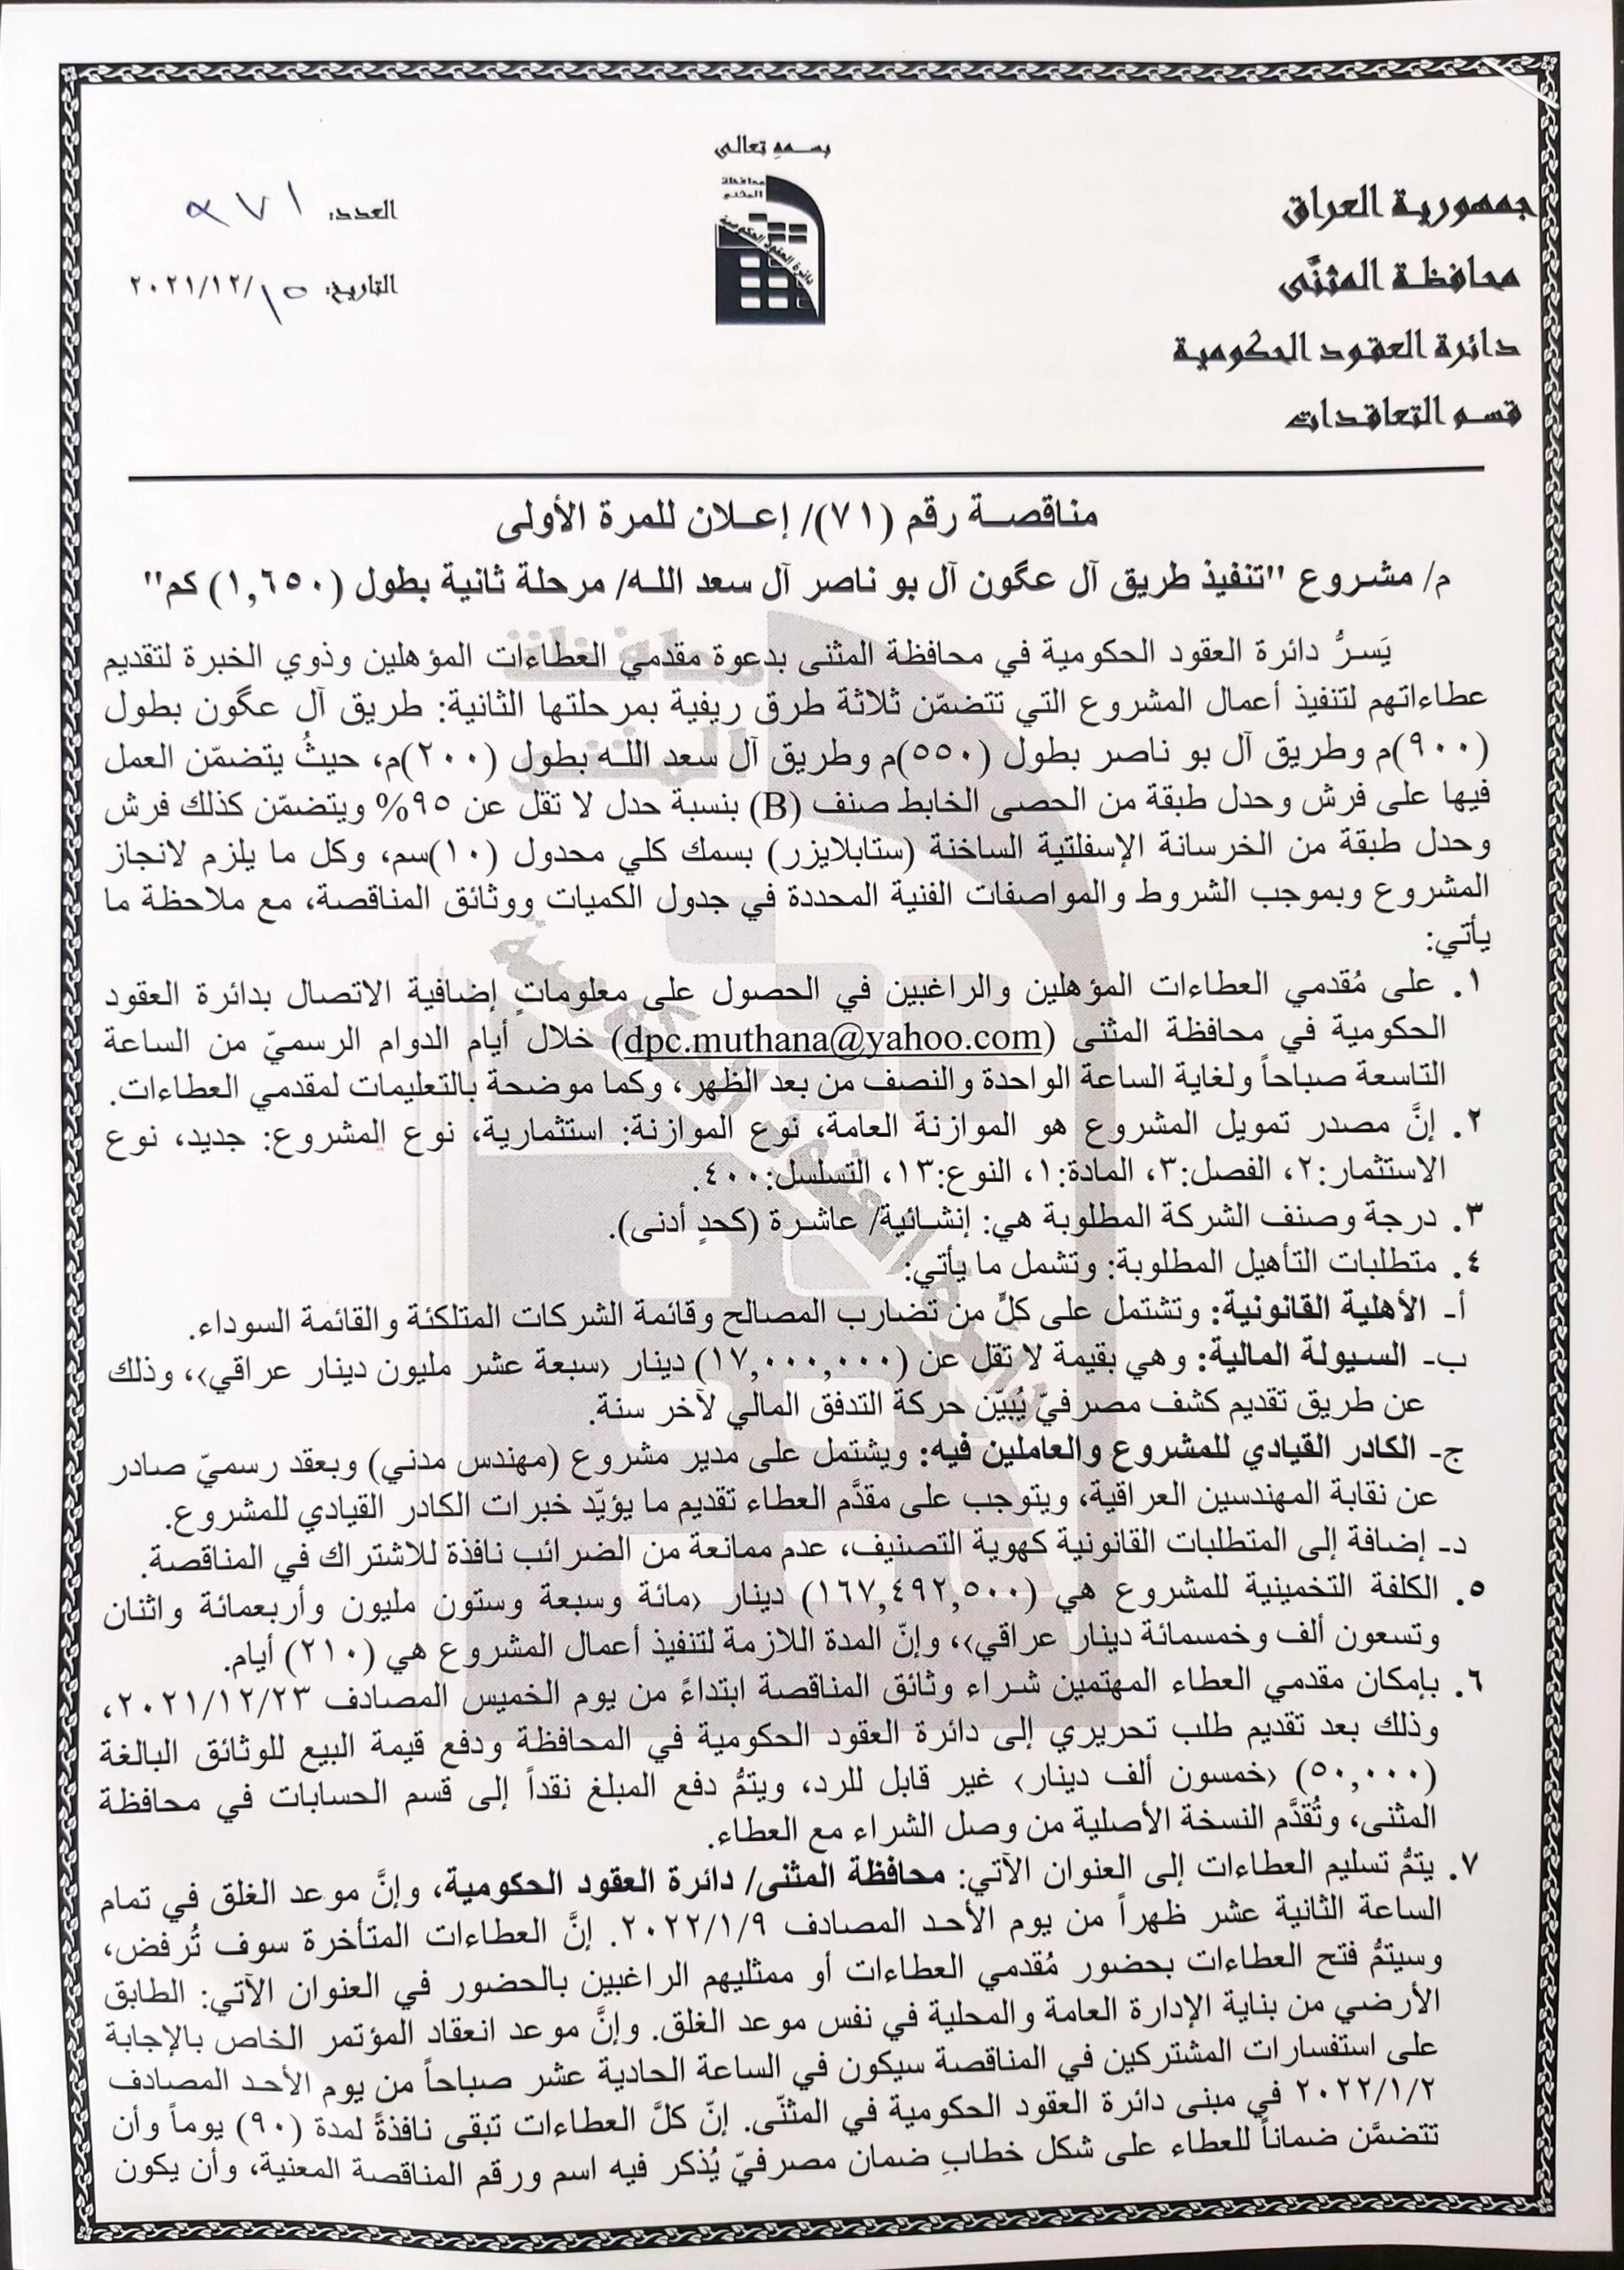 اعلان مشروع تنفيذ طريق ال عكون ال بو ناصر ال سعد الله/مرحلة ثانية بطول (١.٦٥٠)كم